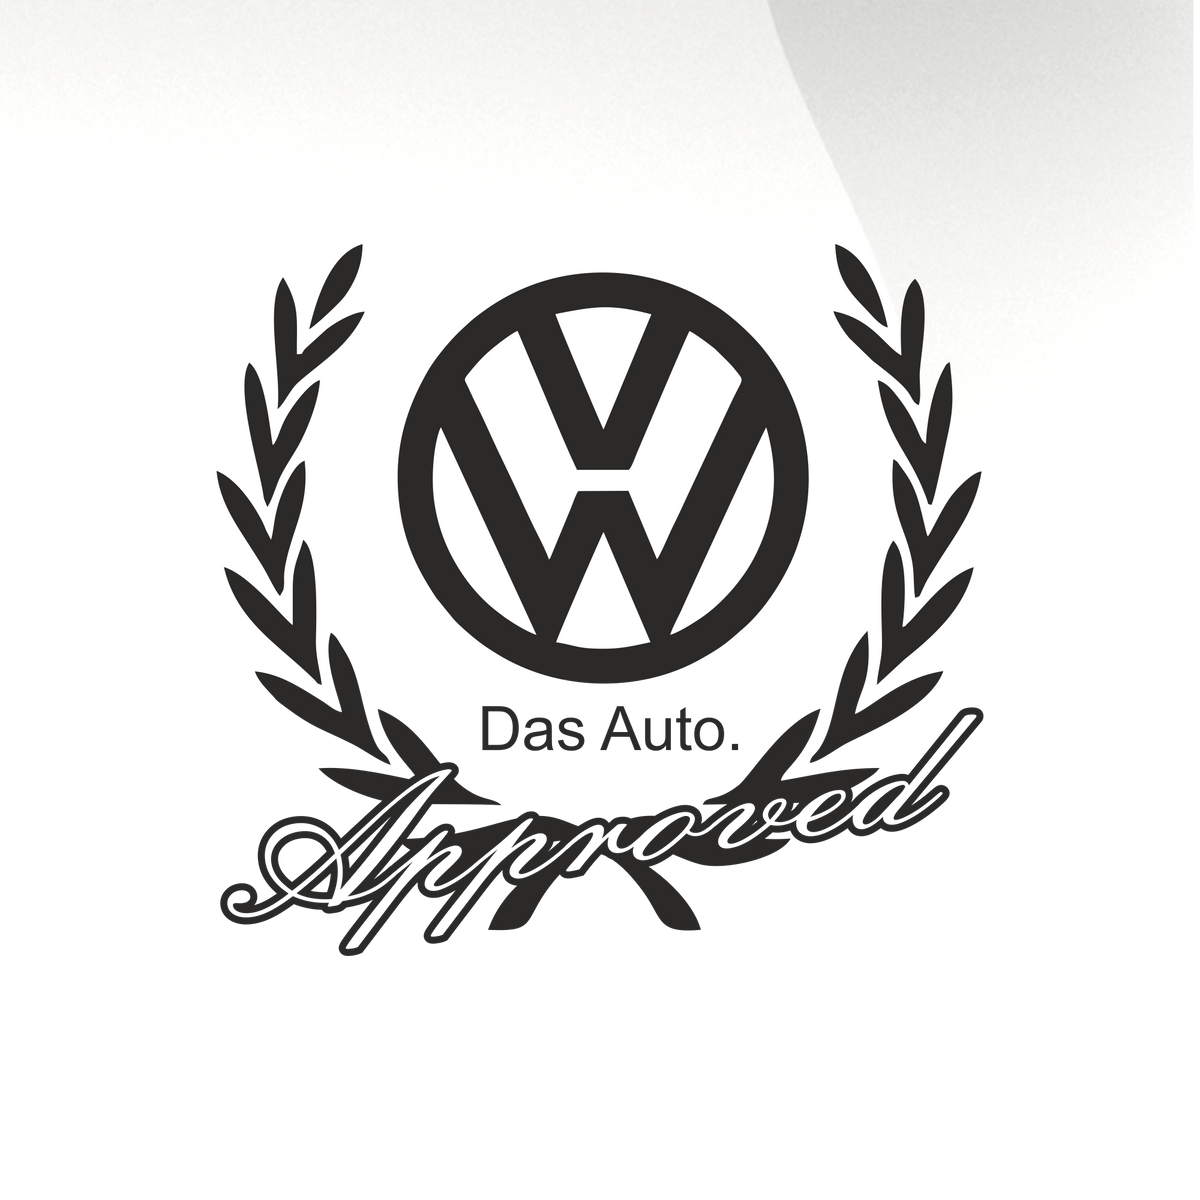 AUTOCOLLANT VW - DAS AUTO. ACHETEZ DES AUTOCOLLANTS EN VINYLE.